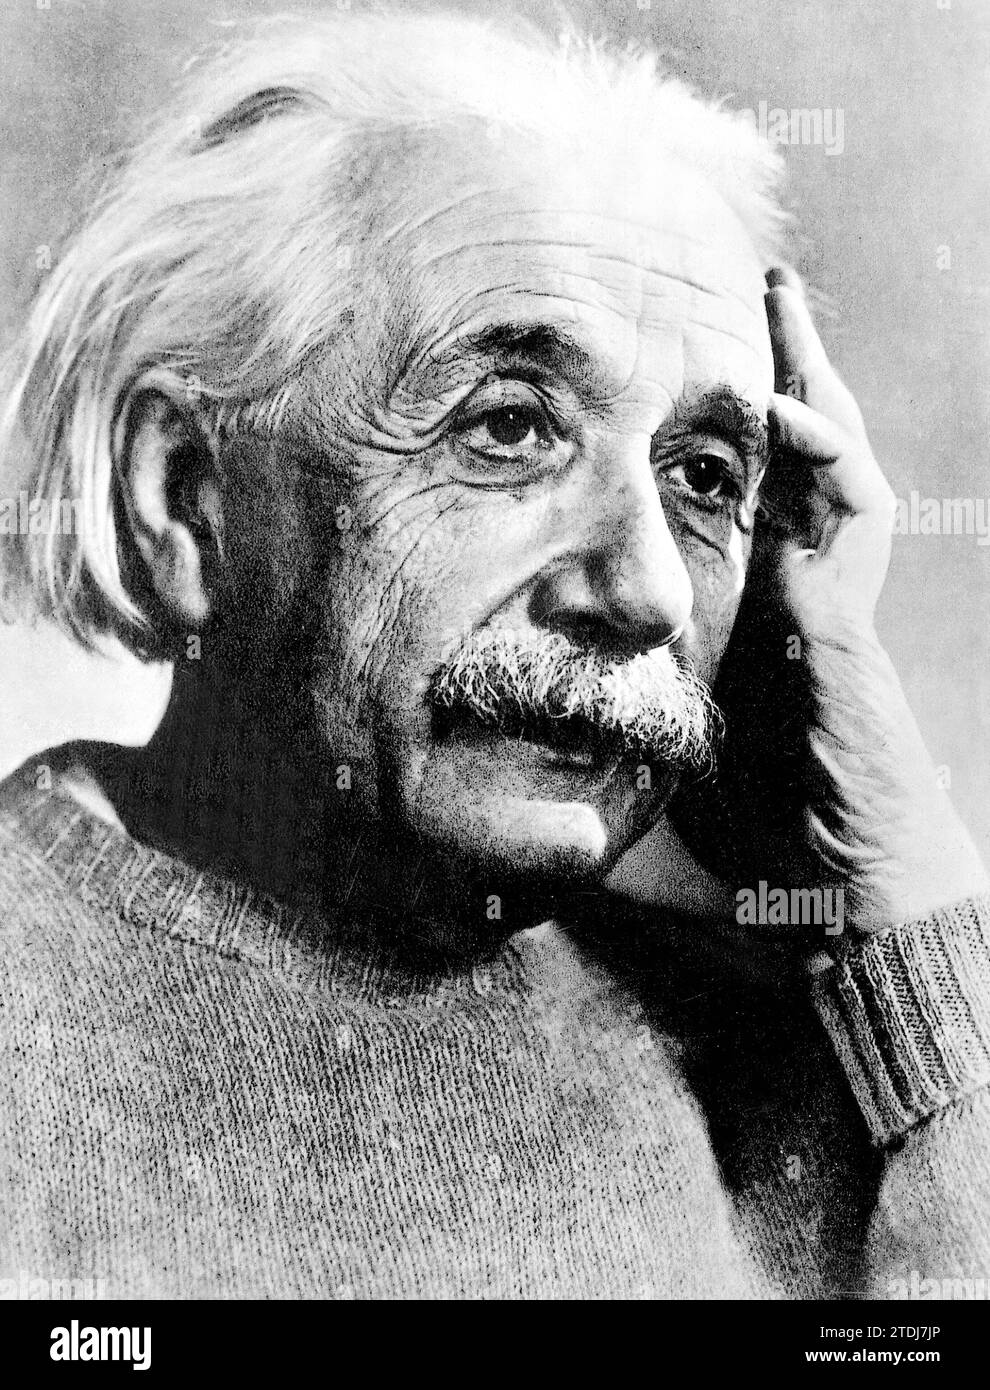 12/31/1939. Porträt des Wissenschaftlers Albert Einstein. Quelle: Album/Archivo ABC Stockfoto